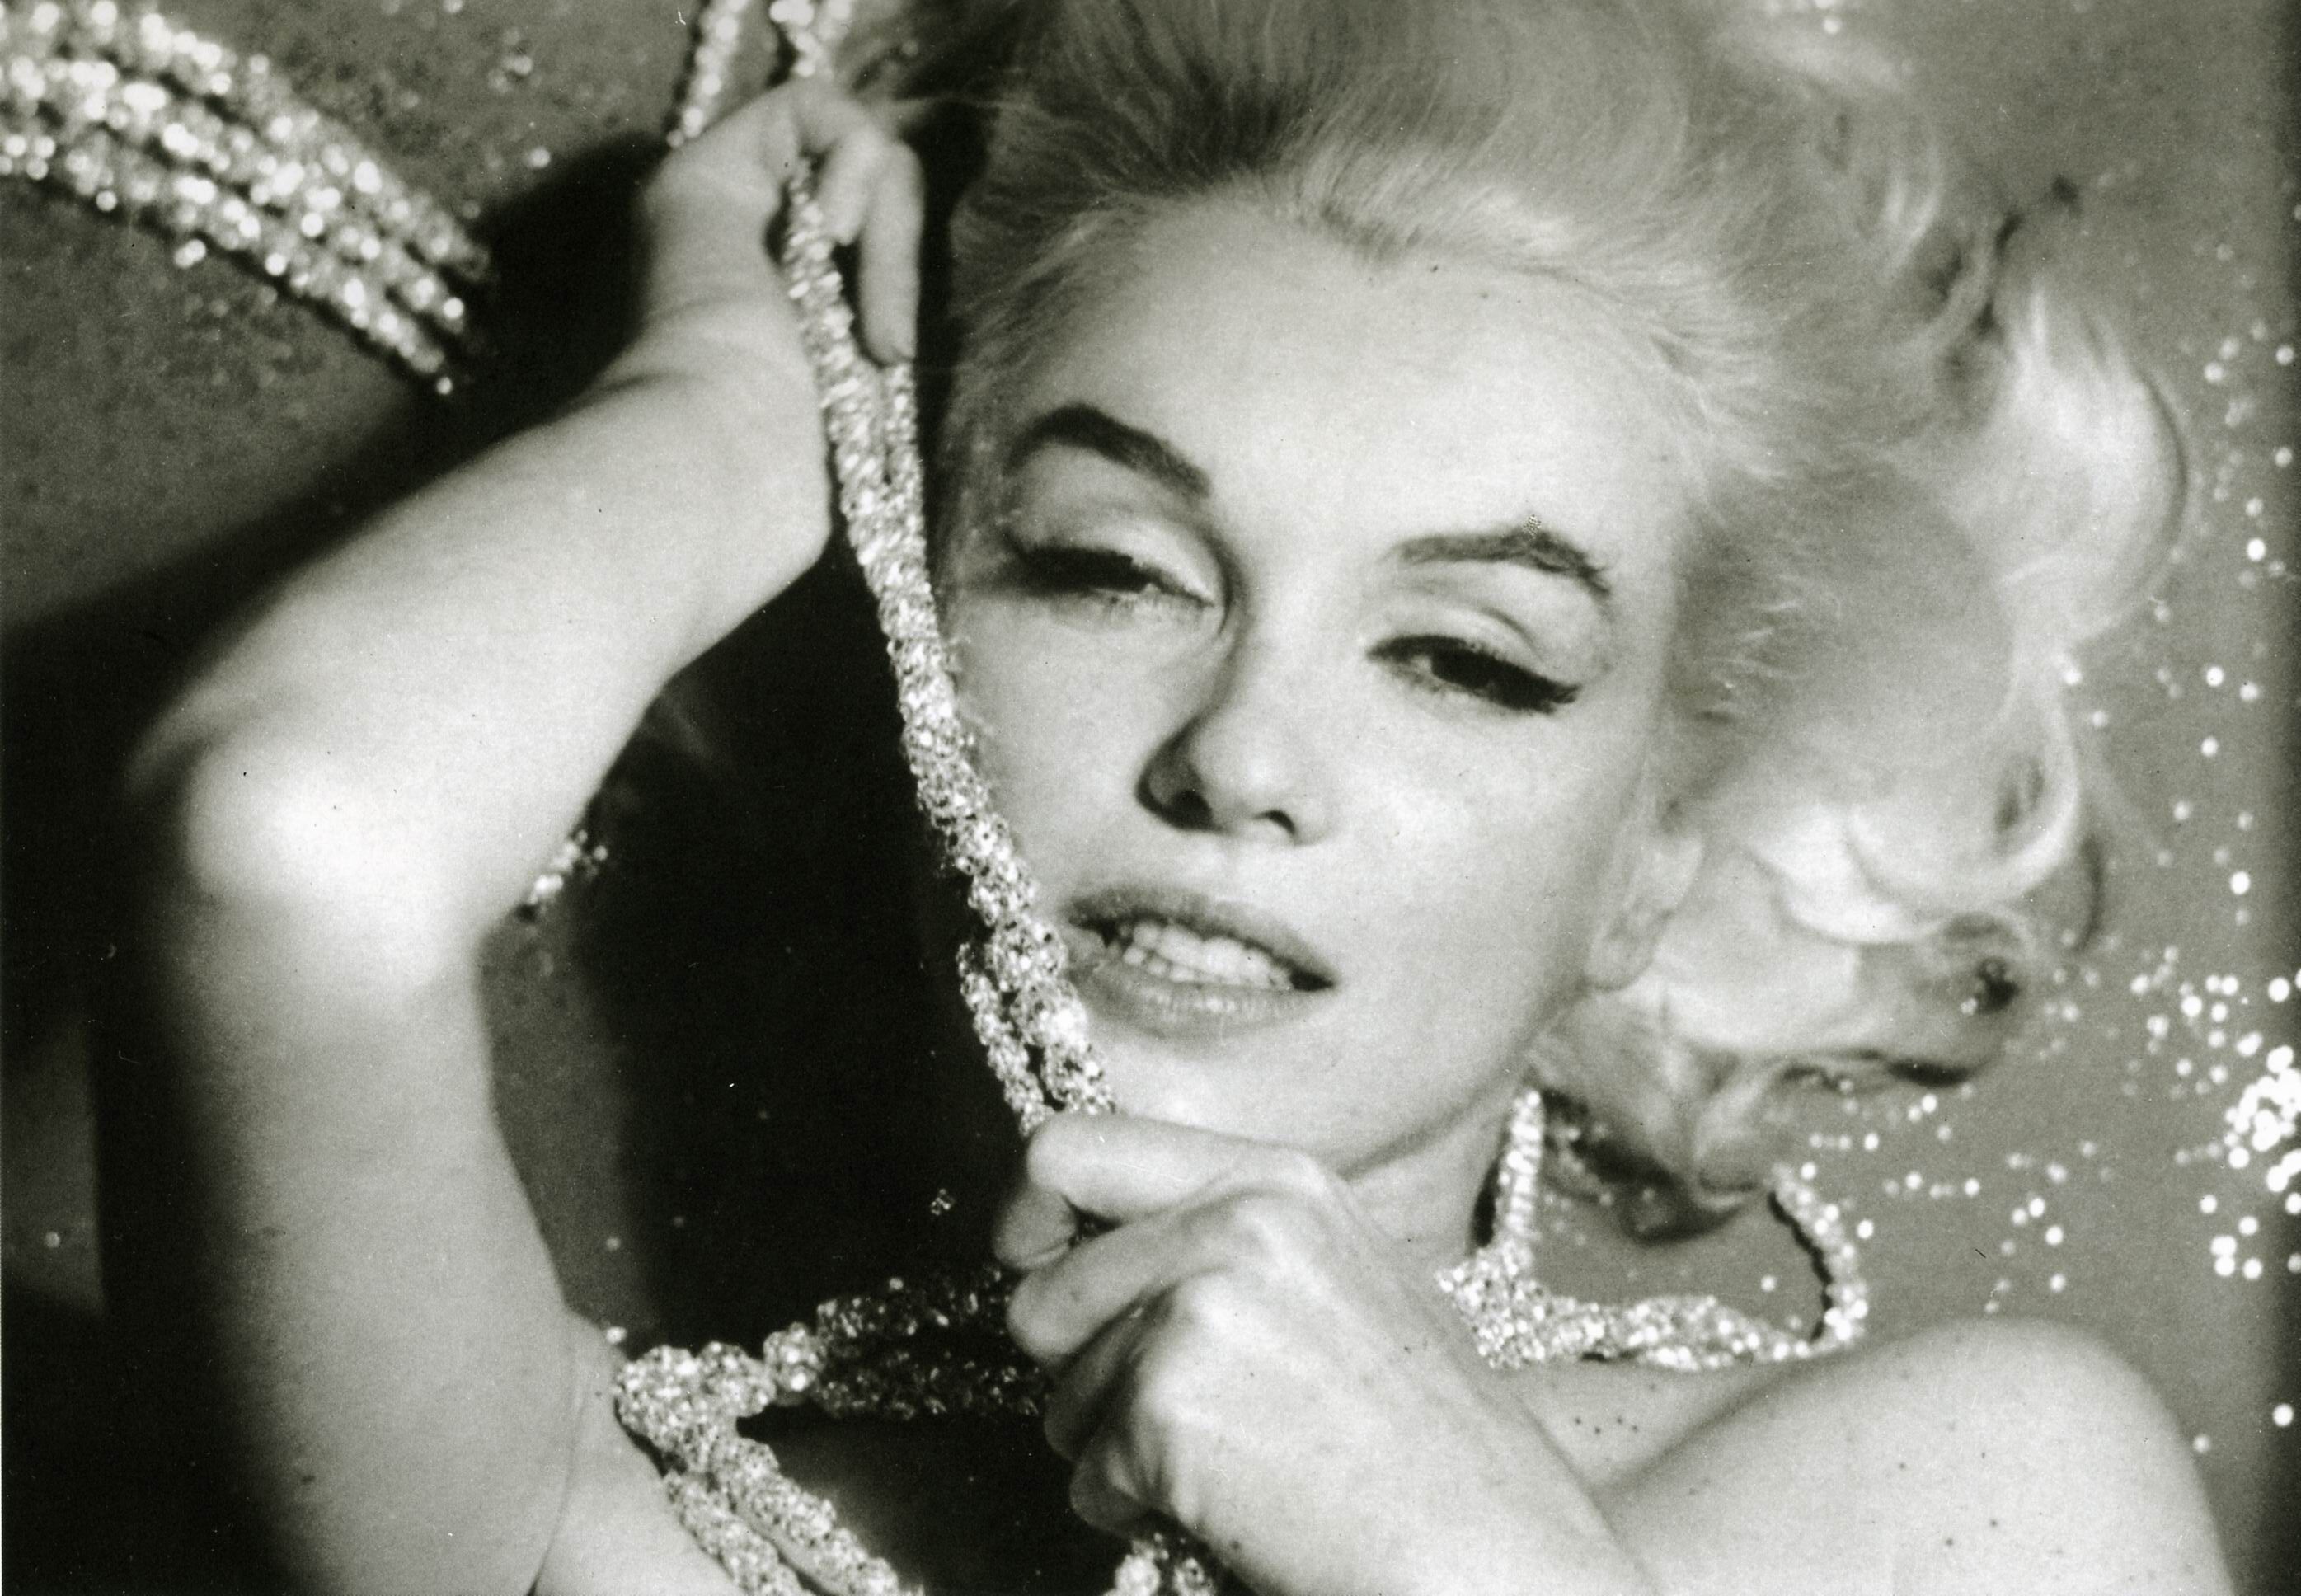 Marilyn Monroe Backgrounds